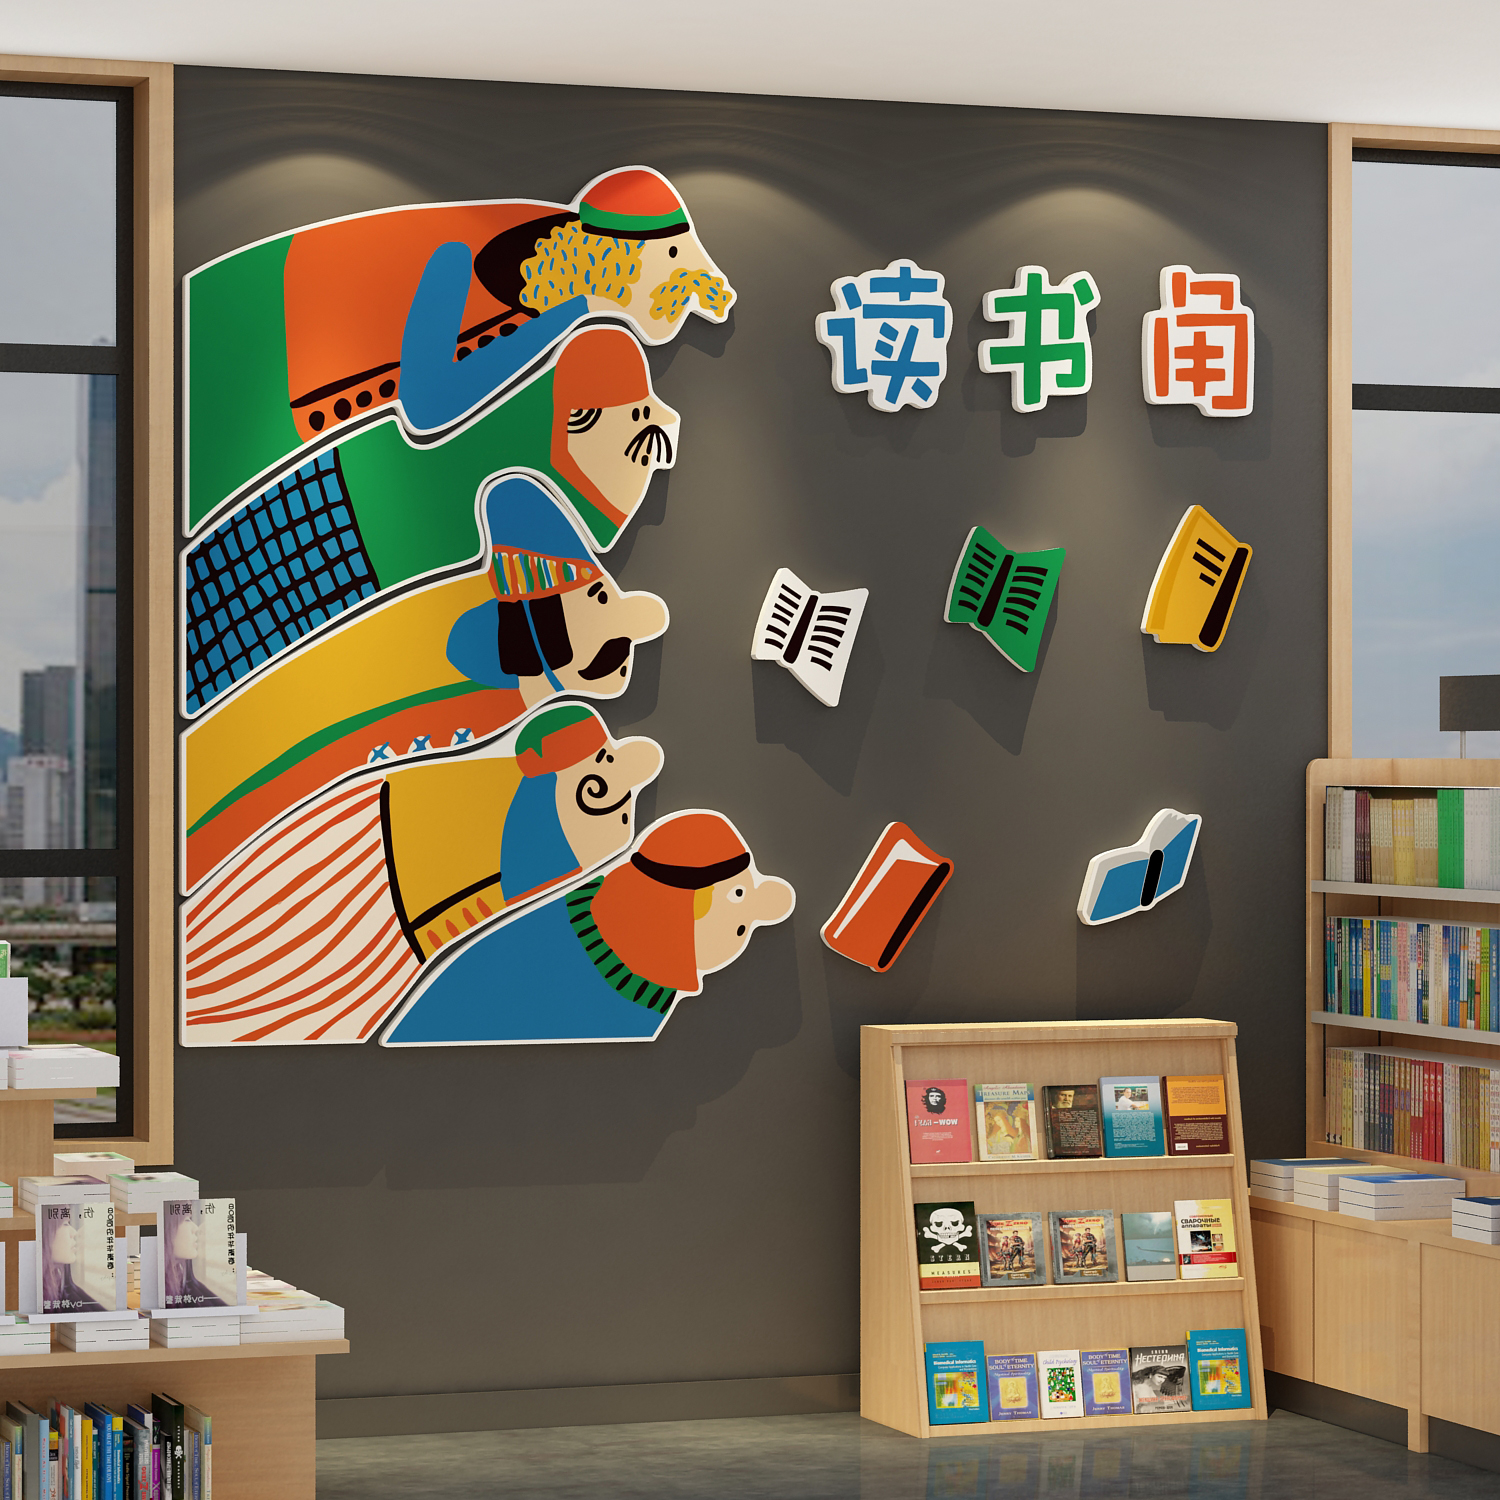 绘本馆布置读儿童图书阅览区角室文化墙面装饰环创主题布置吧互动